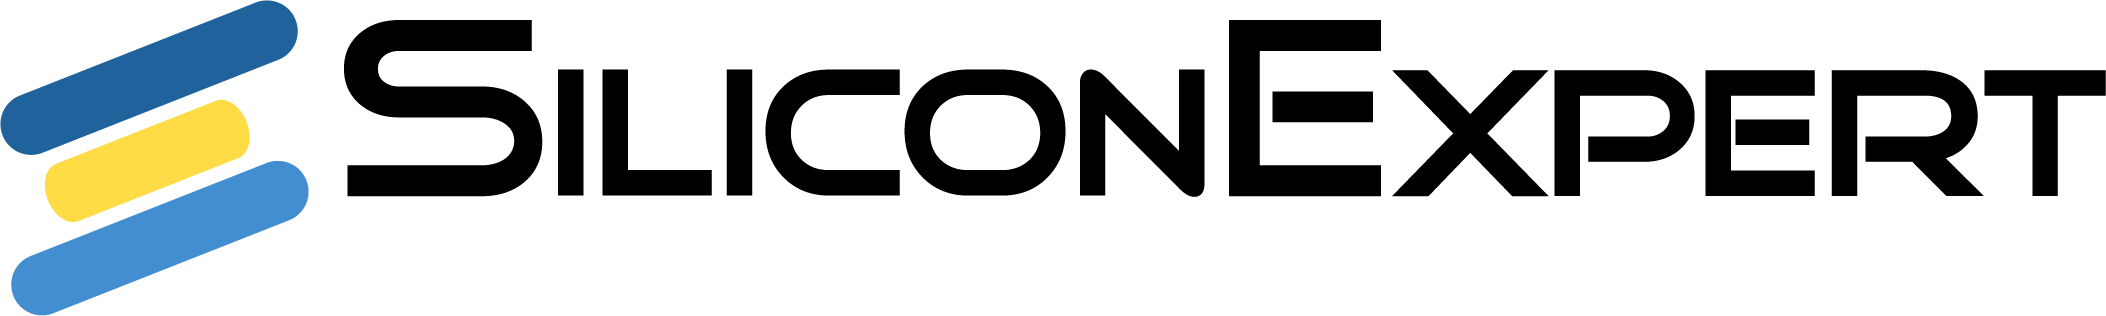 SiliconExpert logo